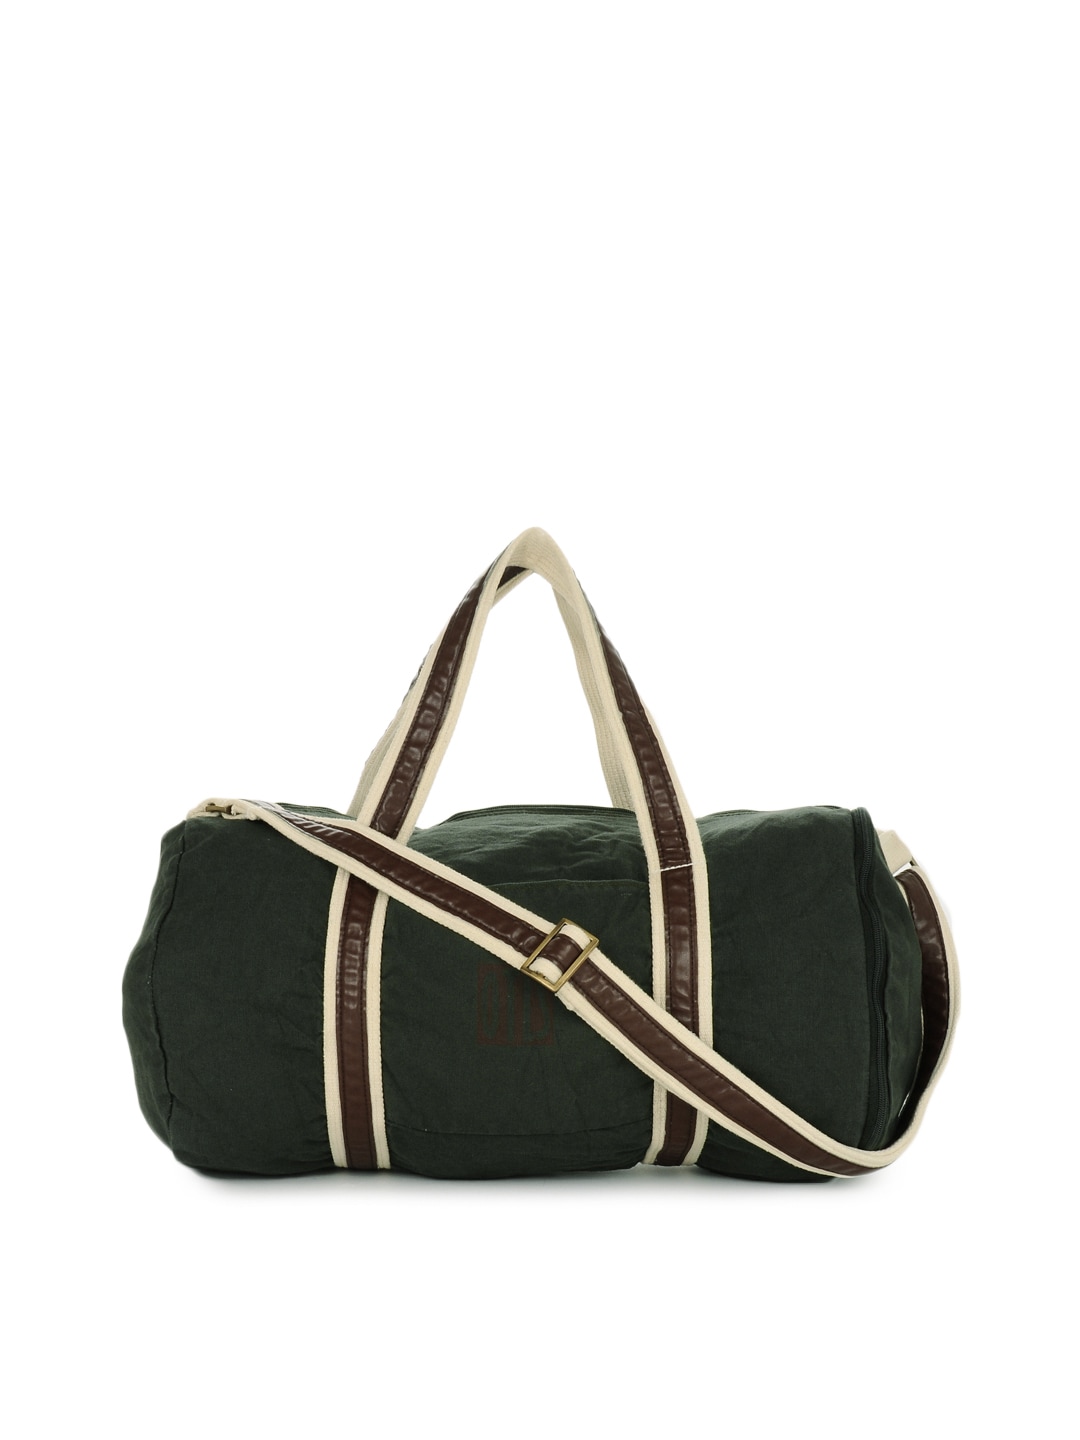 OTLS Unisex Olive Green Duffle Bag